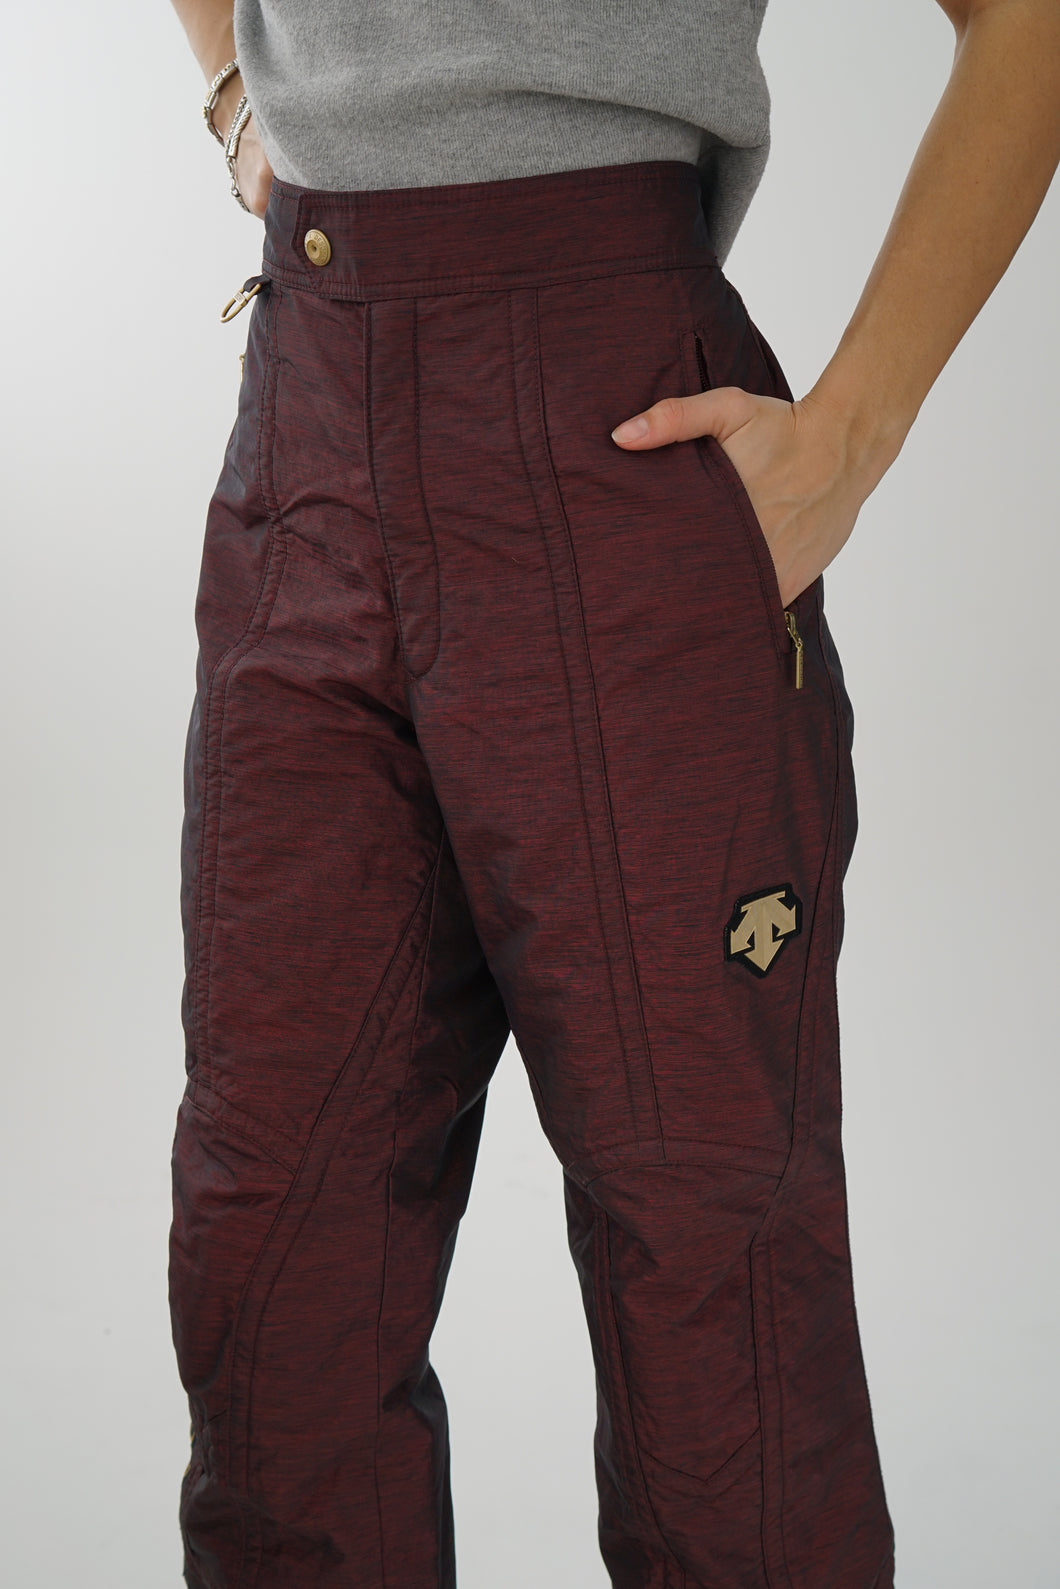 Vintage dark red Descente unisex snow pants size 36 (L)